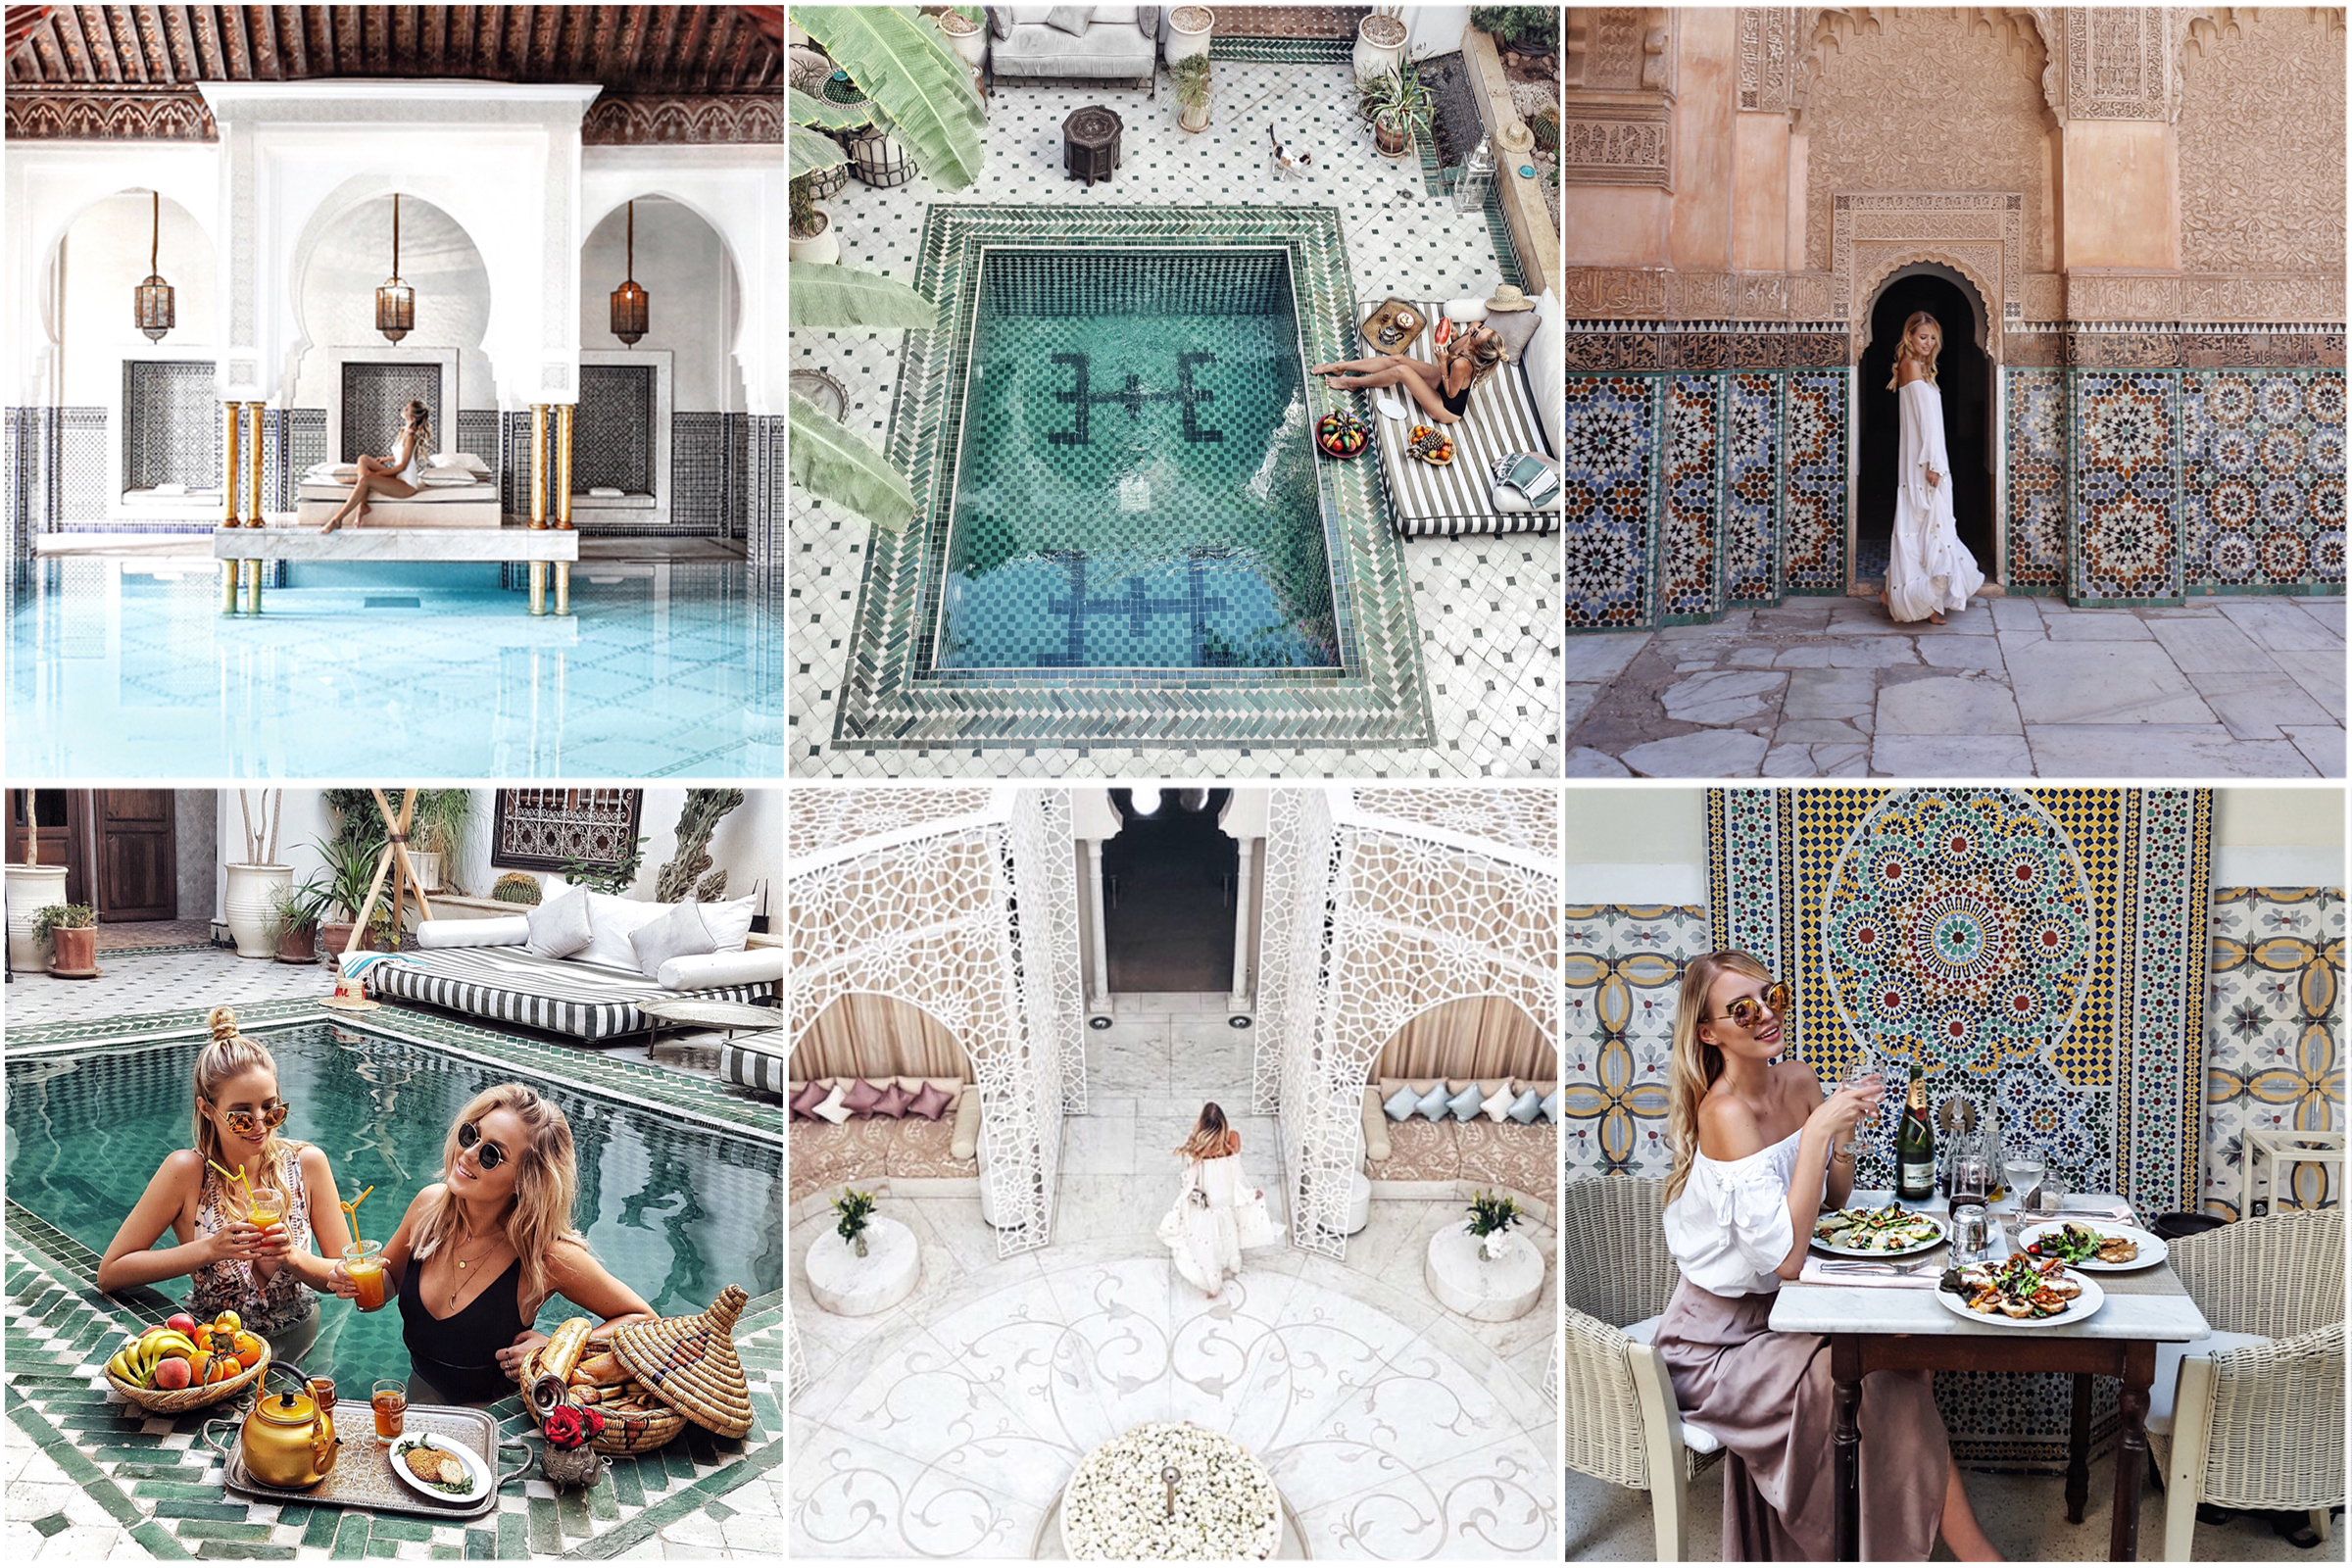 Marrakech travelguide